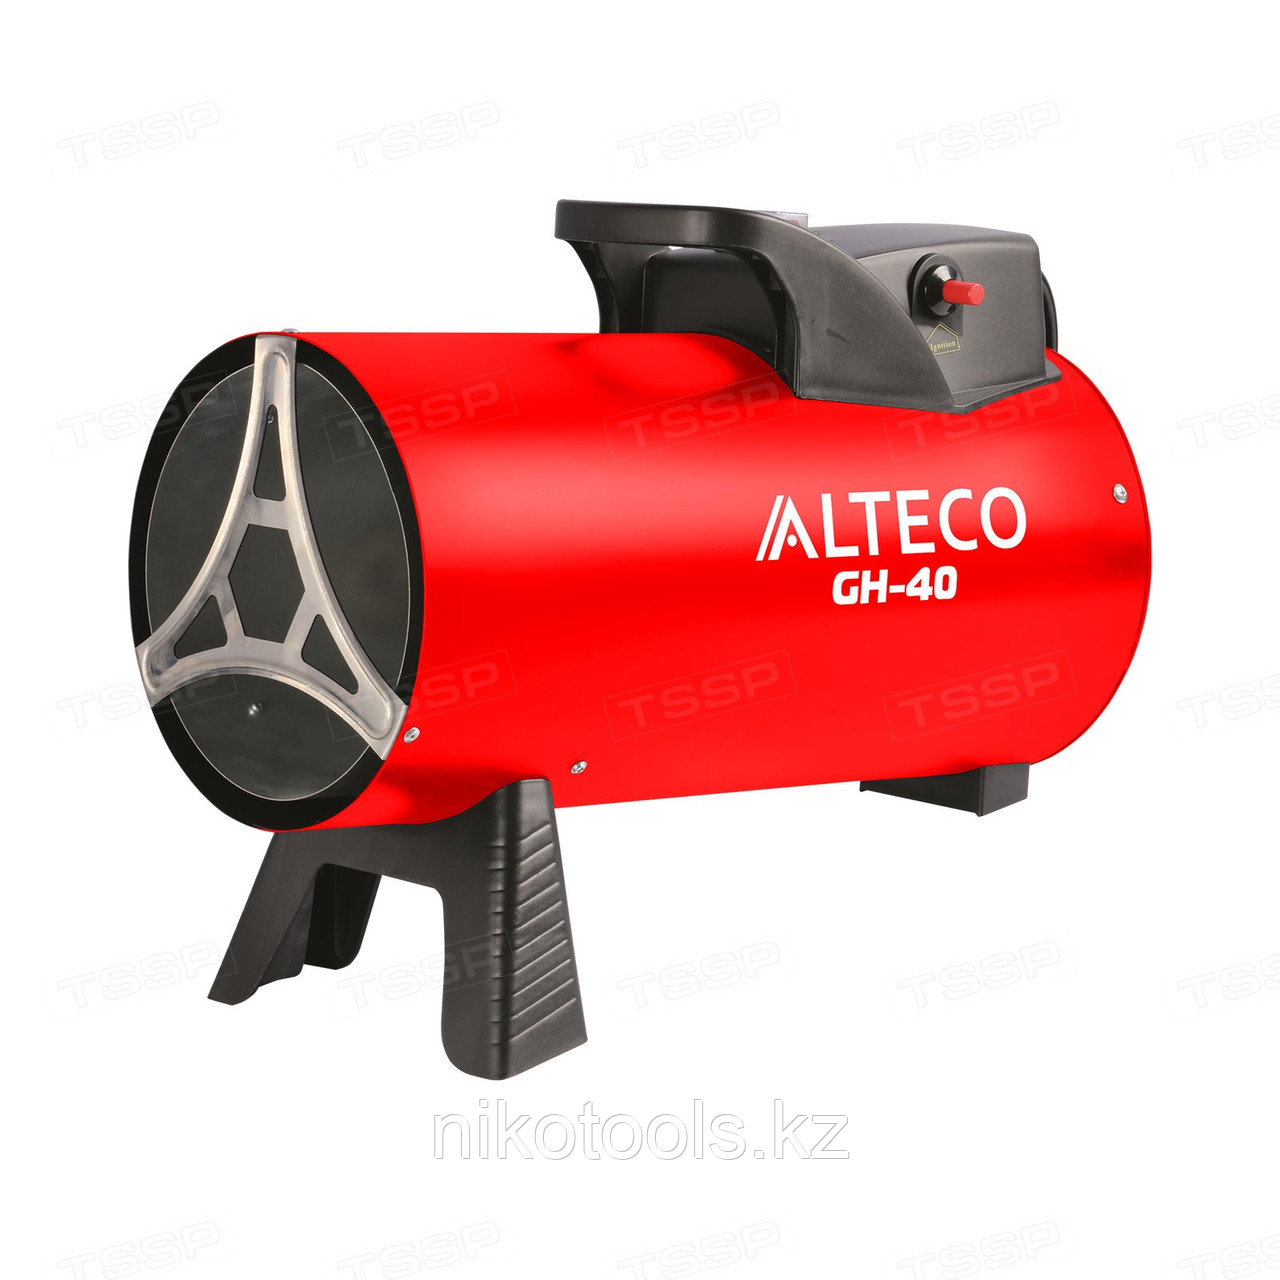 Нагреватель газовый ALTECO GH-40